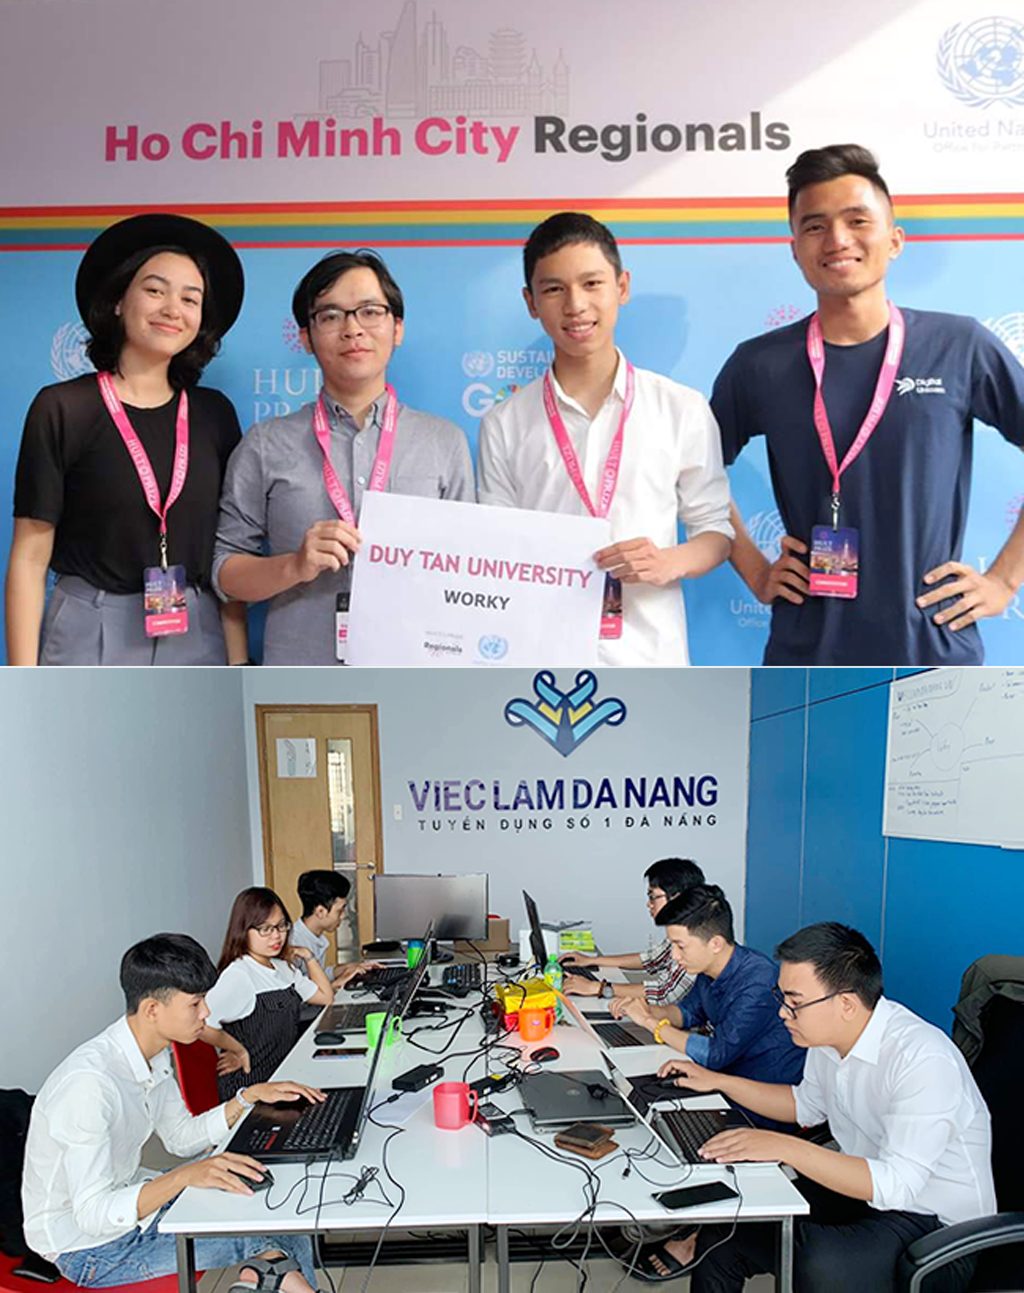 Nhóm sinh viên Duy Tân nằm trong Top 7 giải thưởng Khởi nghiệp HULT Prize Đông Nam Á 2019 (ảnh trên) và sinh viên Tạ Linh (đầu tiên bên phải - ảnh dưới) đang làm việc cùng nhóm trong dự án khởi nghiệp về việc làm